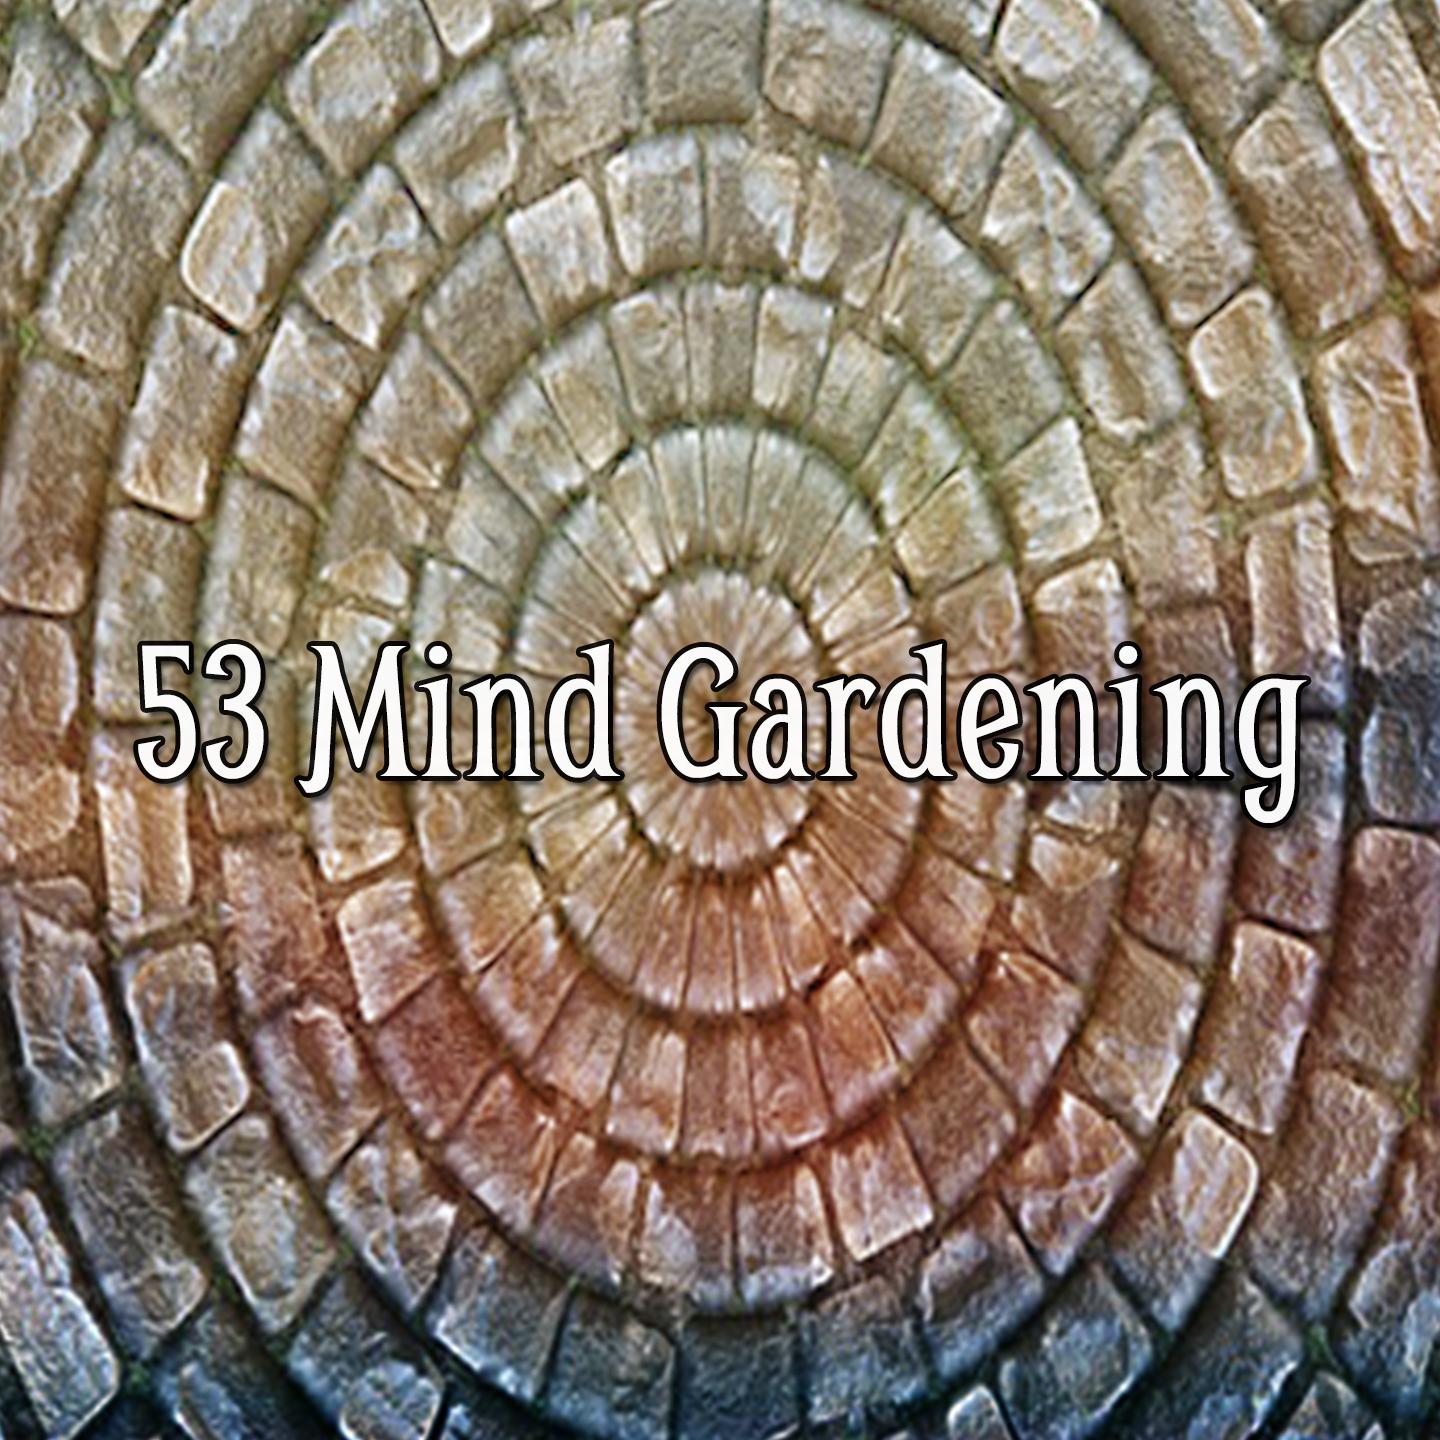 53 Mind Gardening